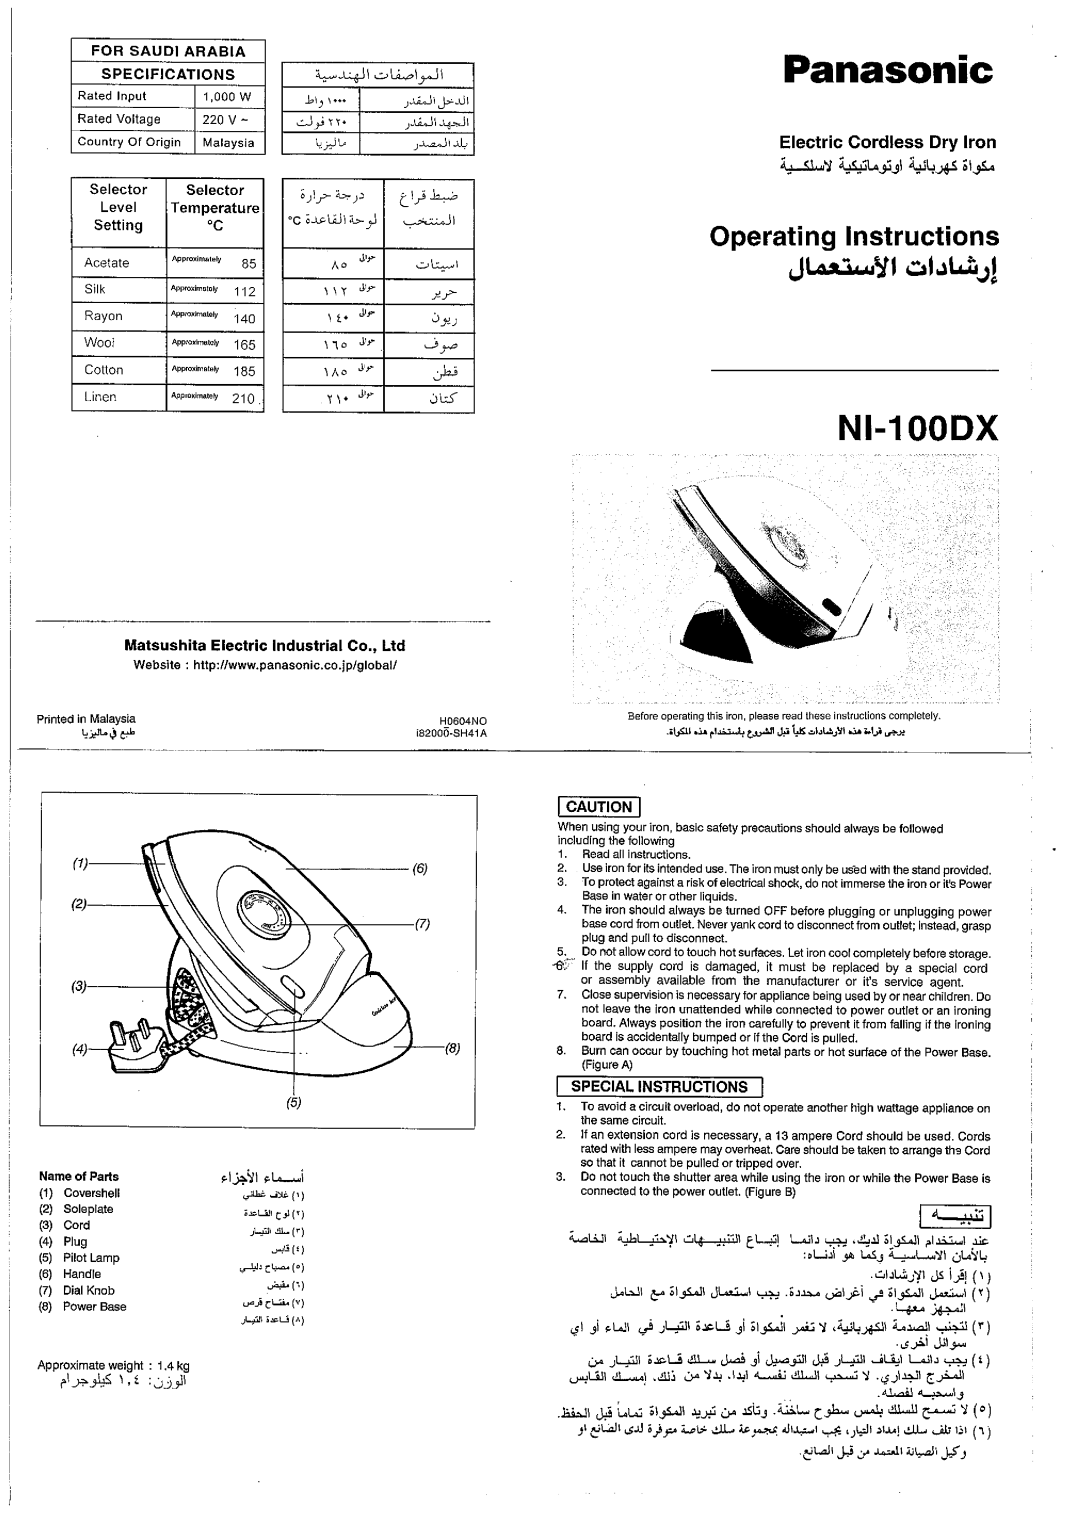 Panasonic NI-100DX manual 